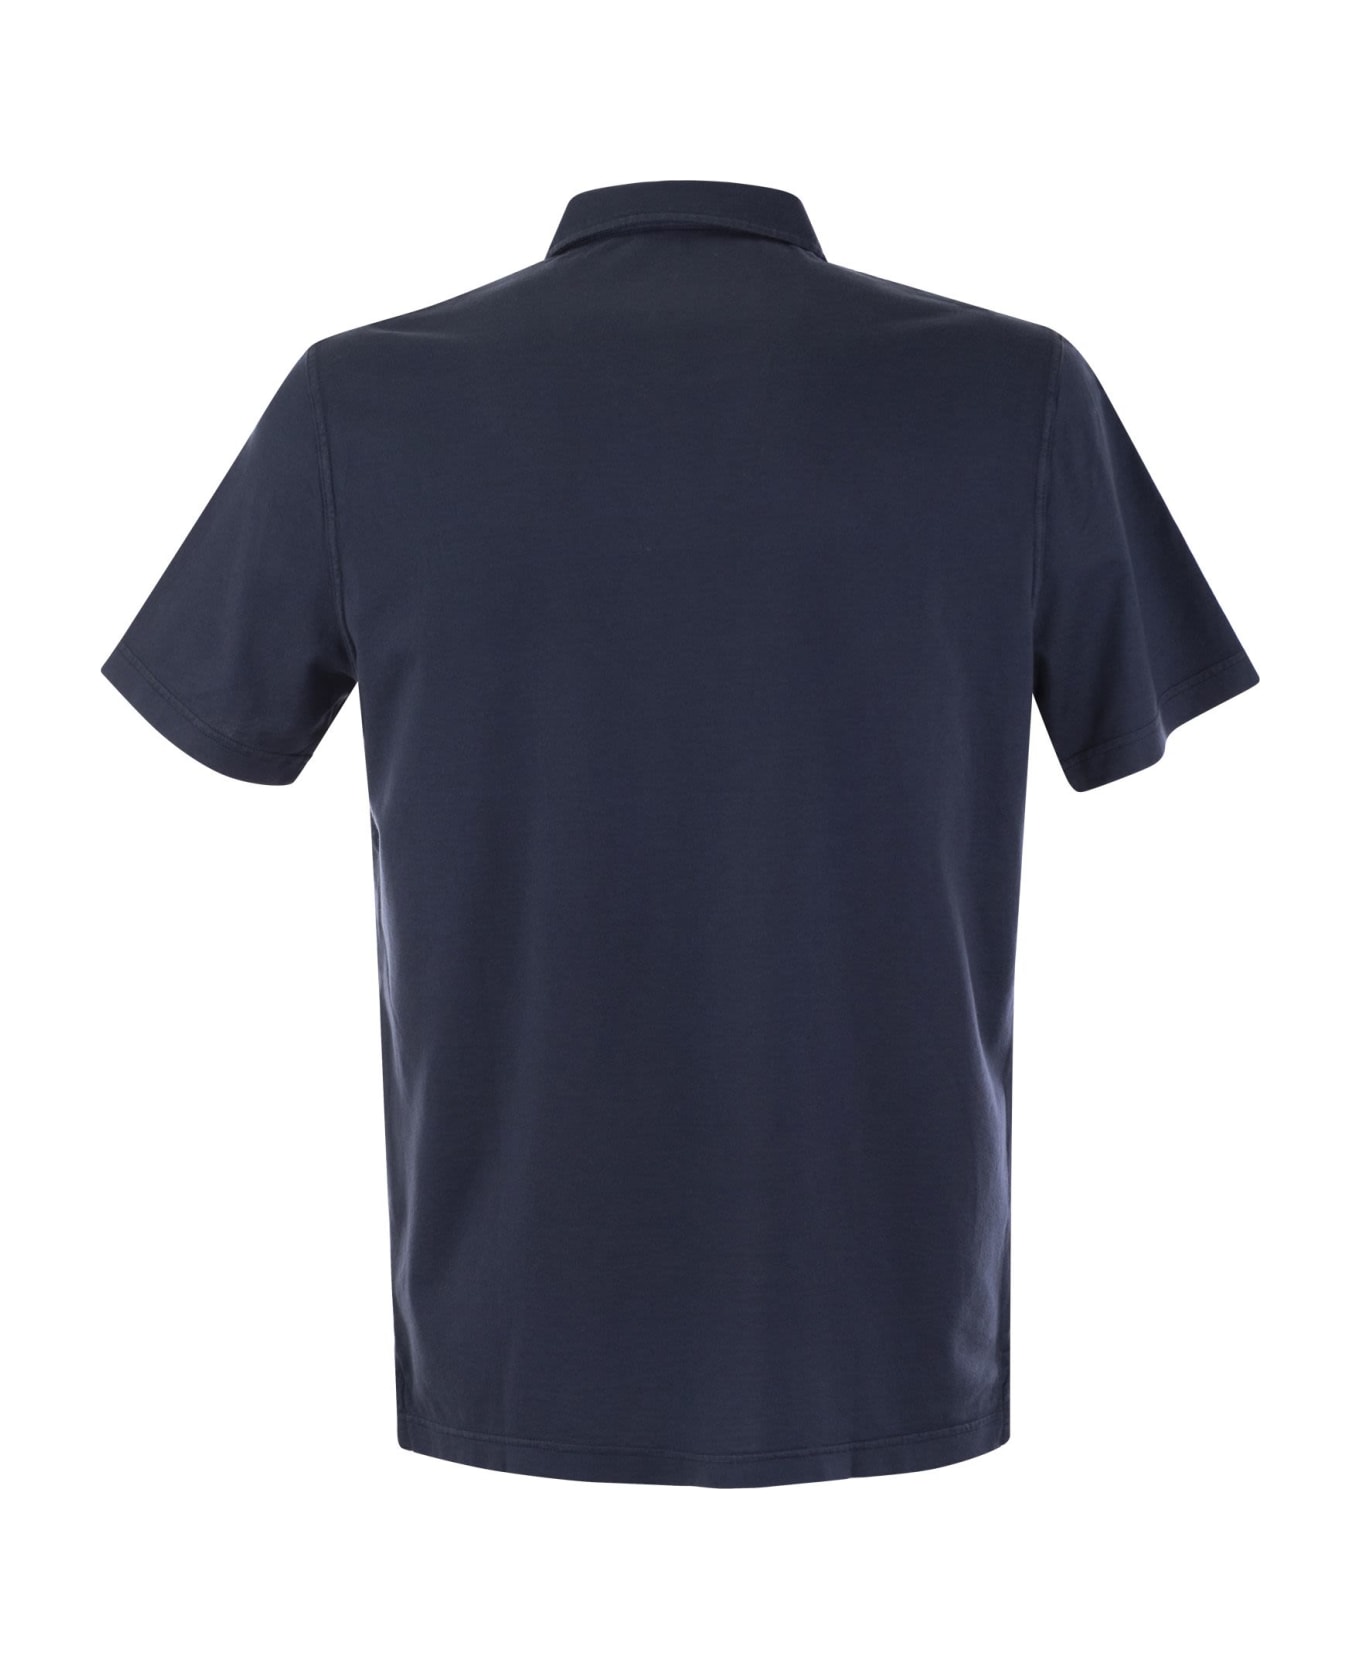 Fedeli Cotton Polo Shirt With Open Collar - Blue